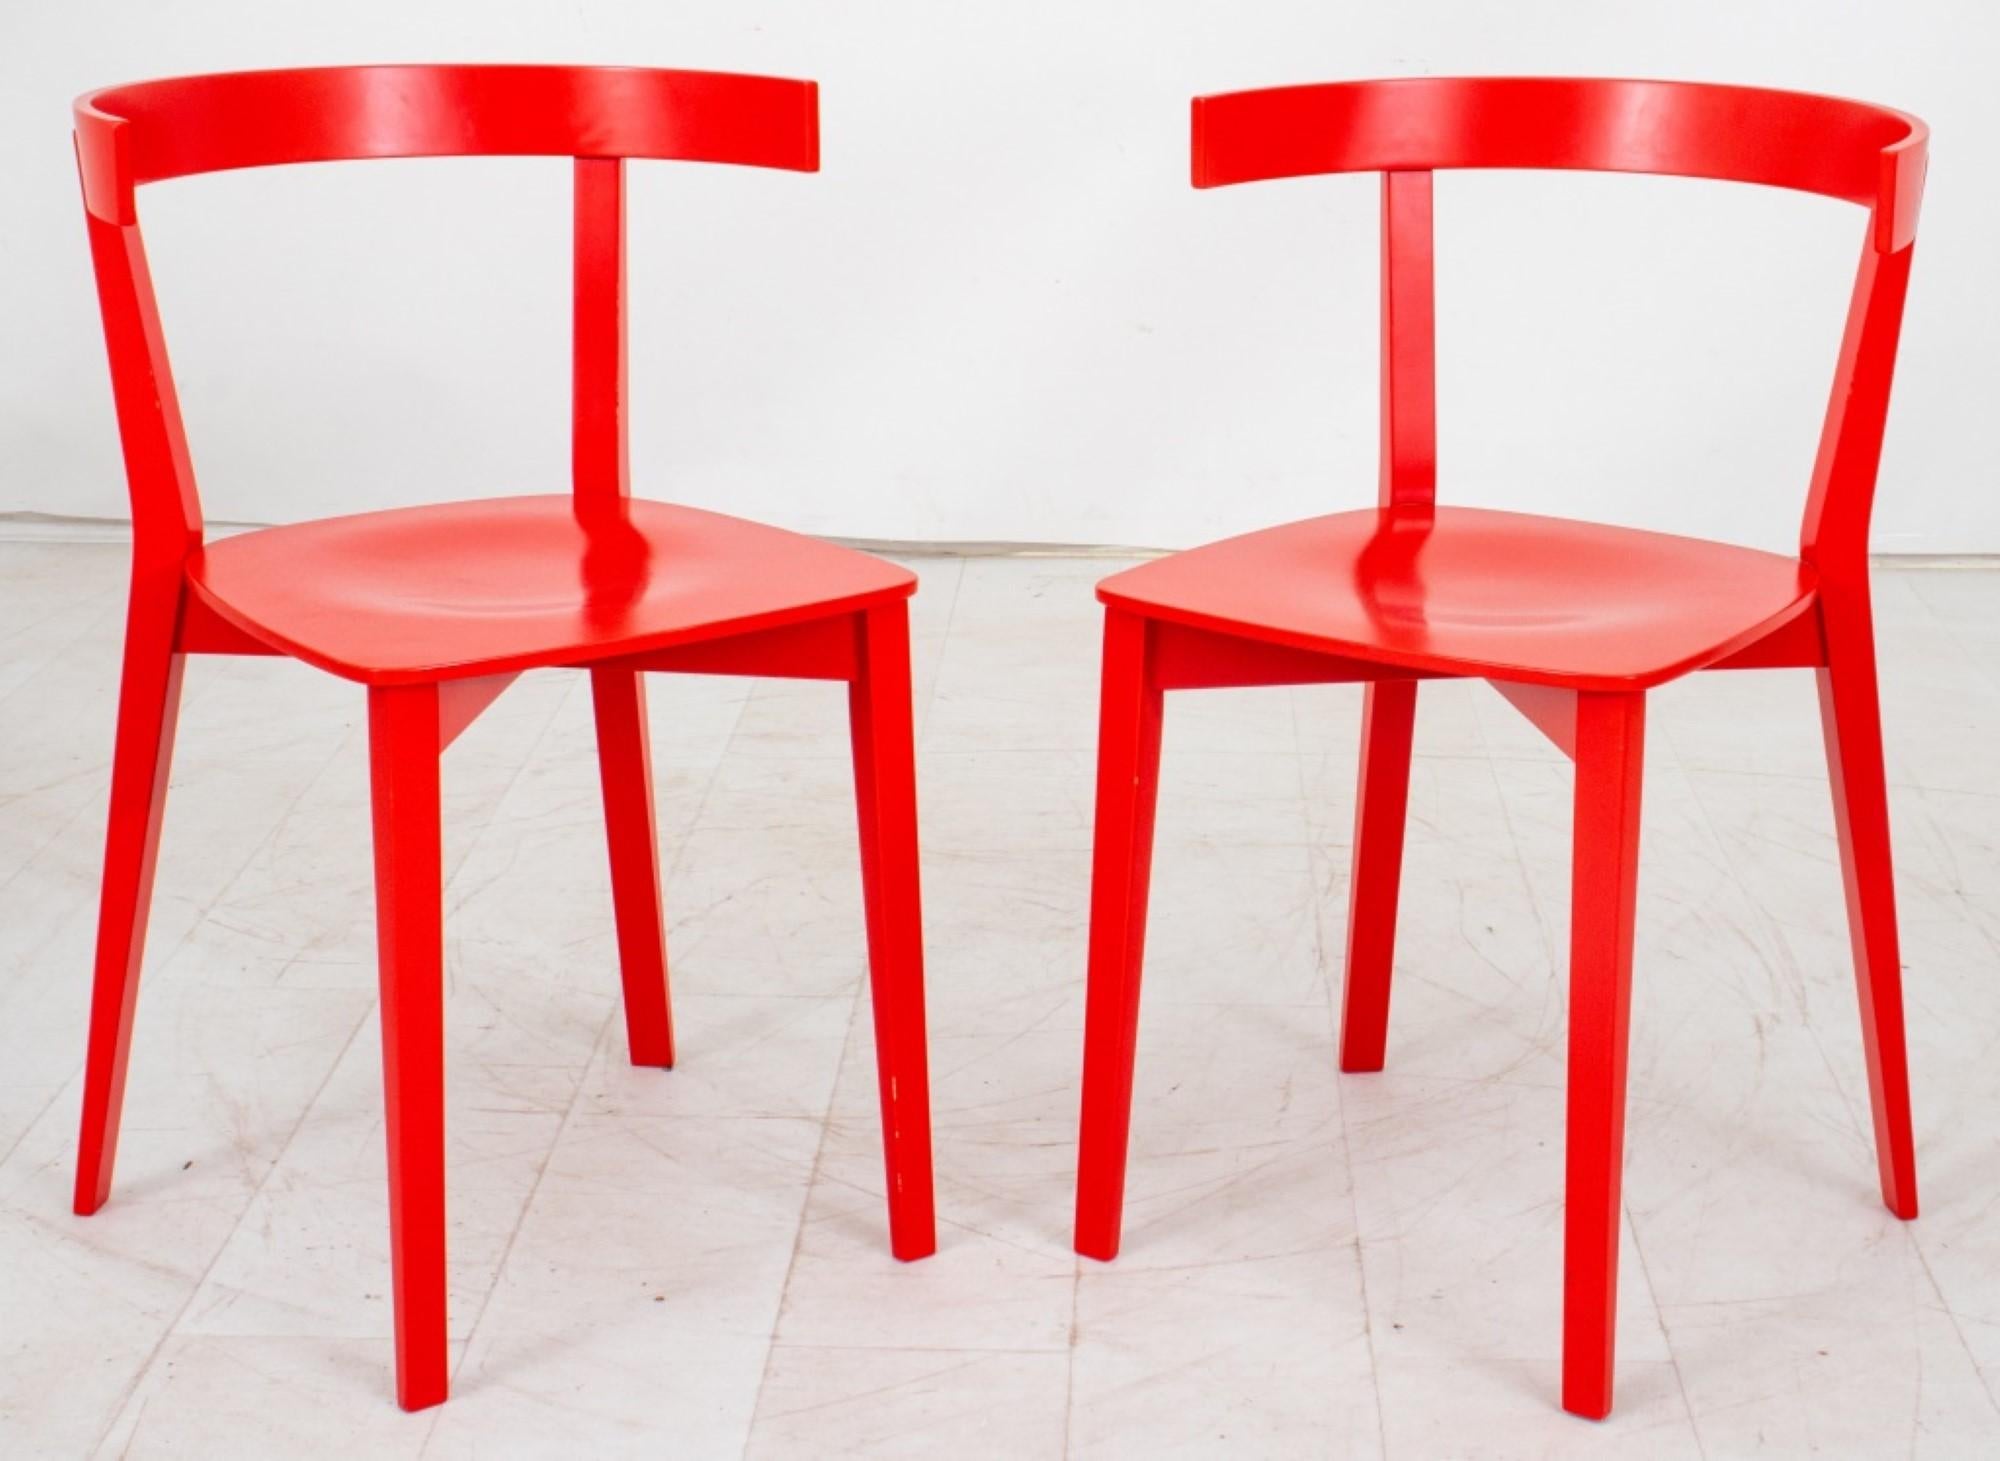 
Les dimensions de la paire de chaises d'appoint en contreplaqué rouge The Modern Scandinavian sont d'environ :

Hauteur : 29 pouces
Largeur : 18.75 pouces
Profondeur : 17 pouces
Hauteur du siège : 18 pouces